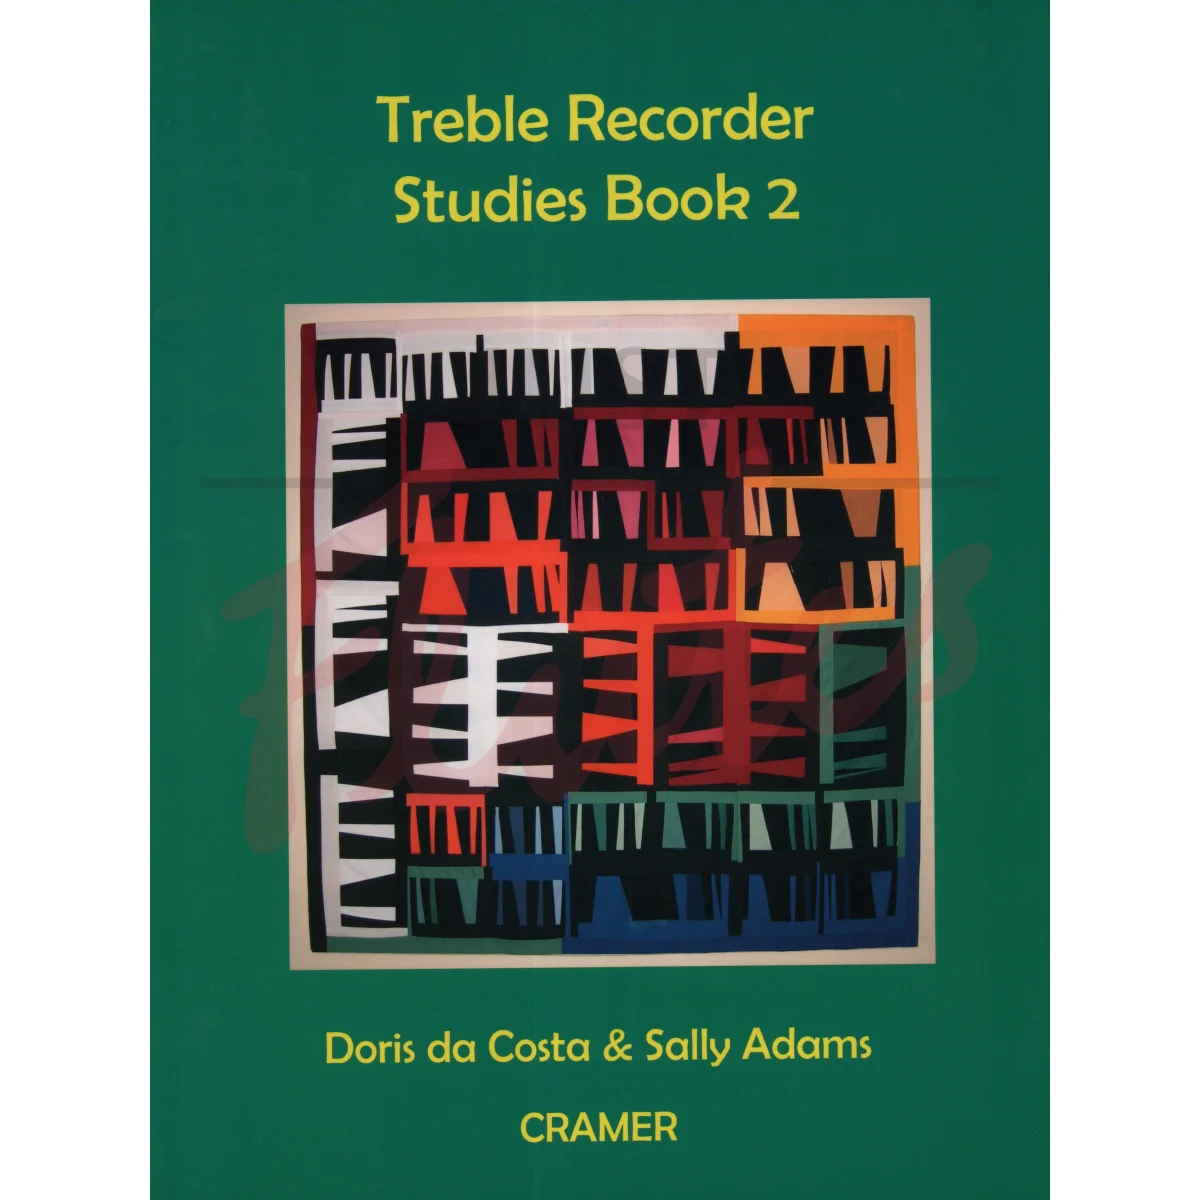 Treble Recorder Studies Book 2